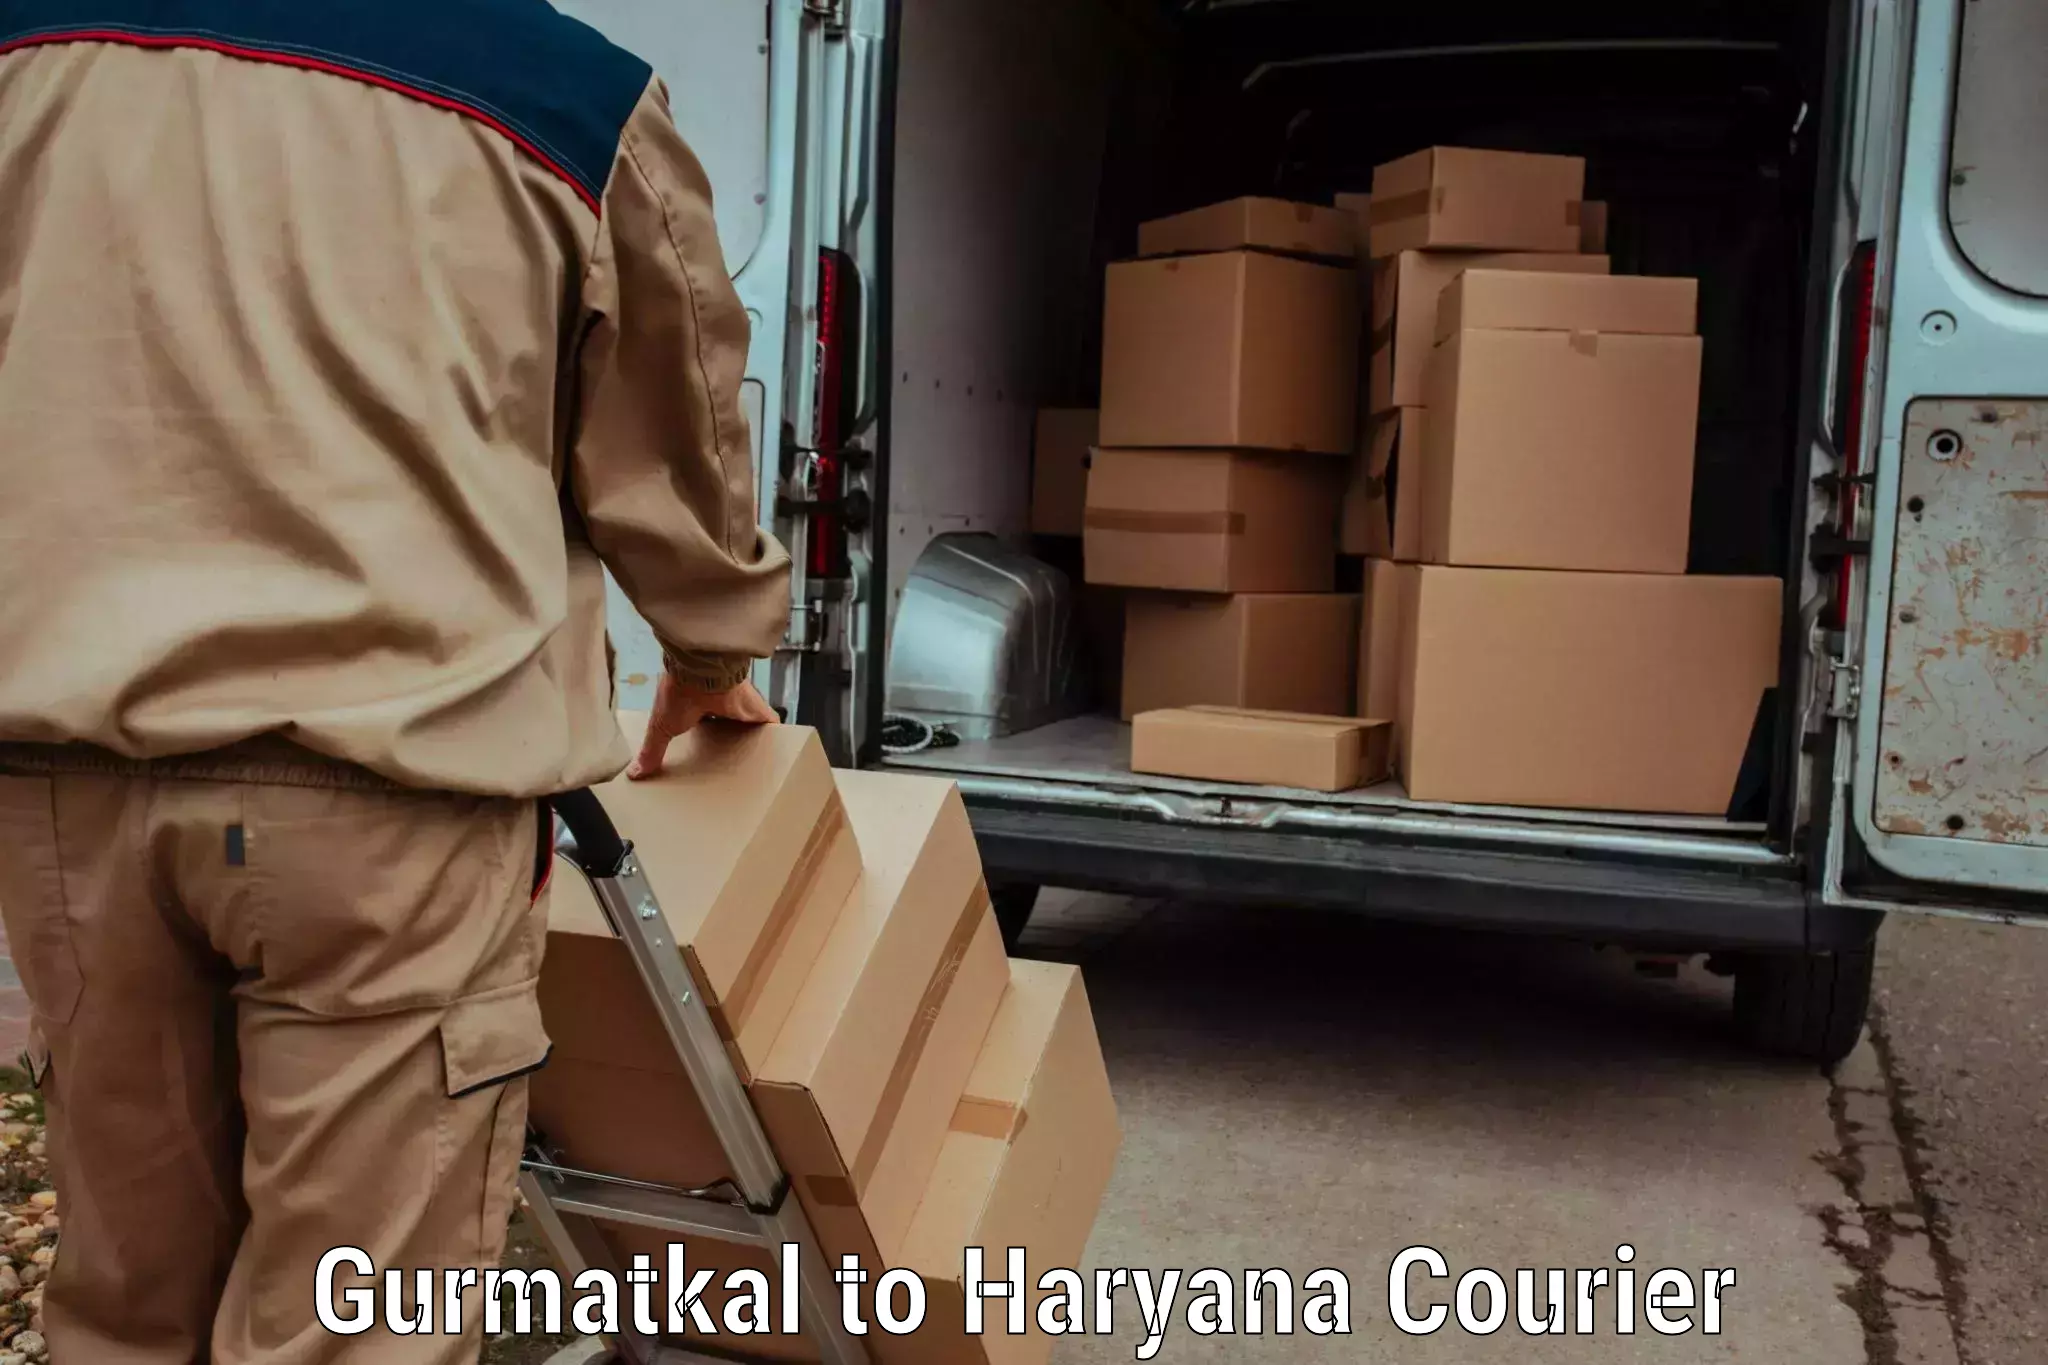 Luggage shipment specialists Gurmatkal to Haryana